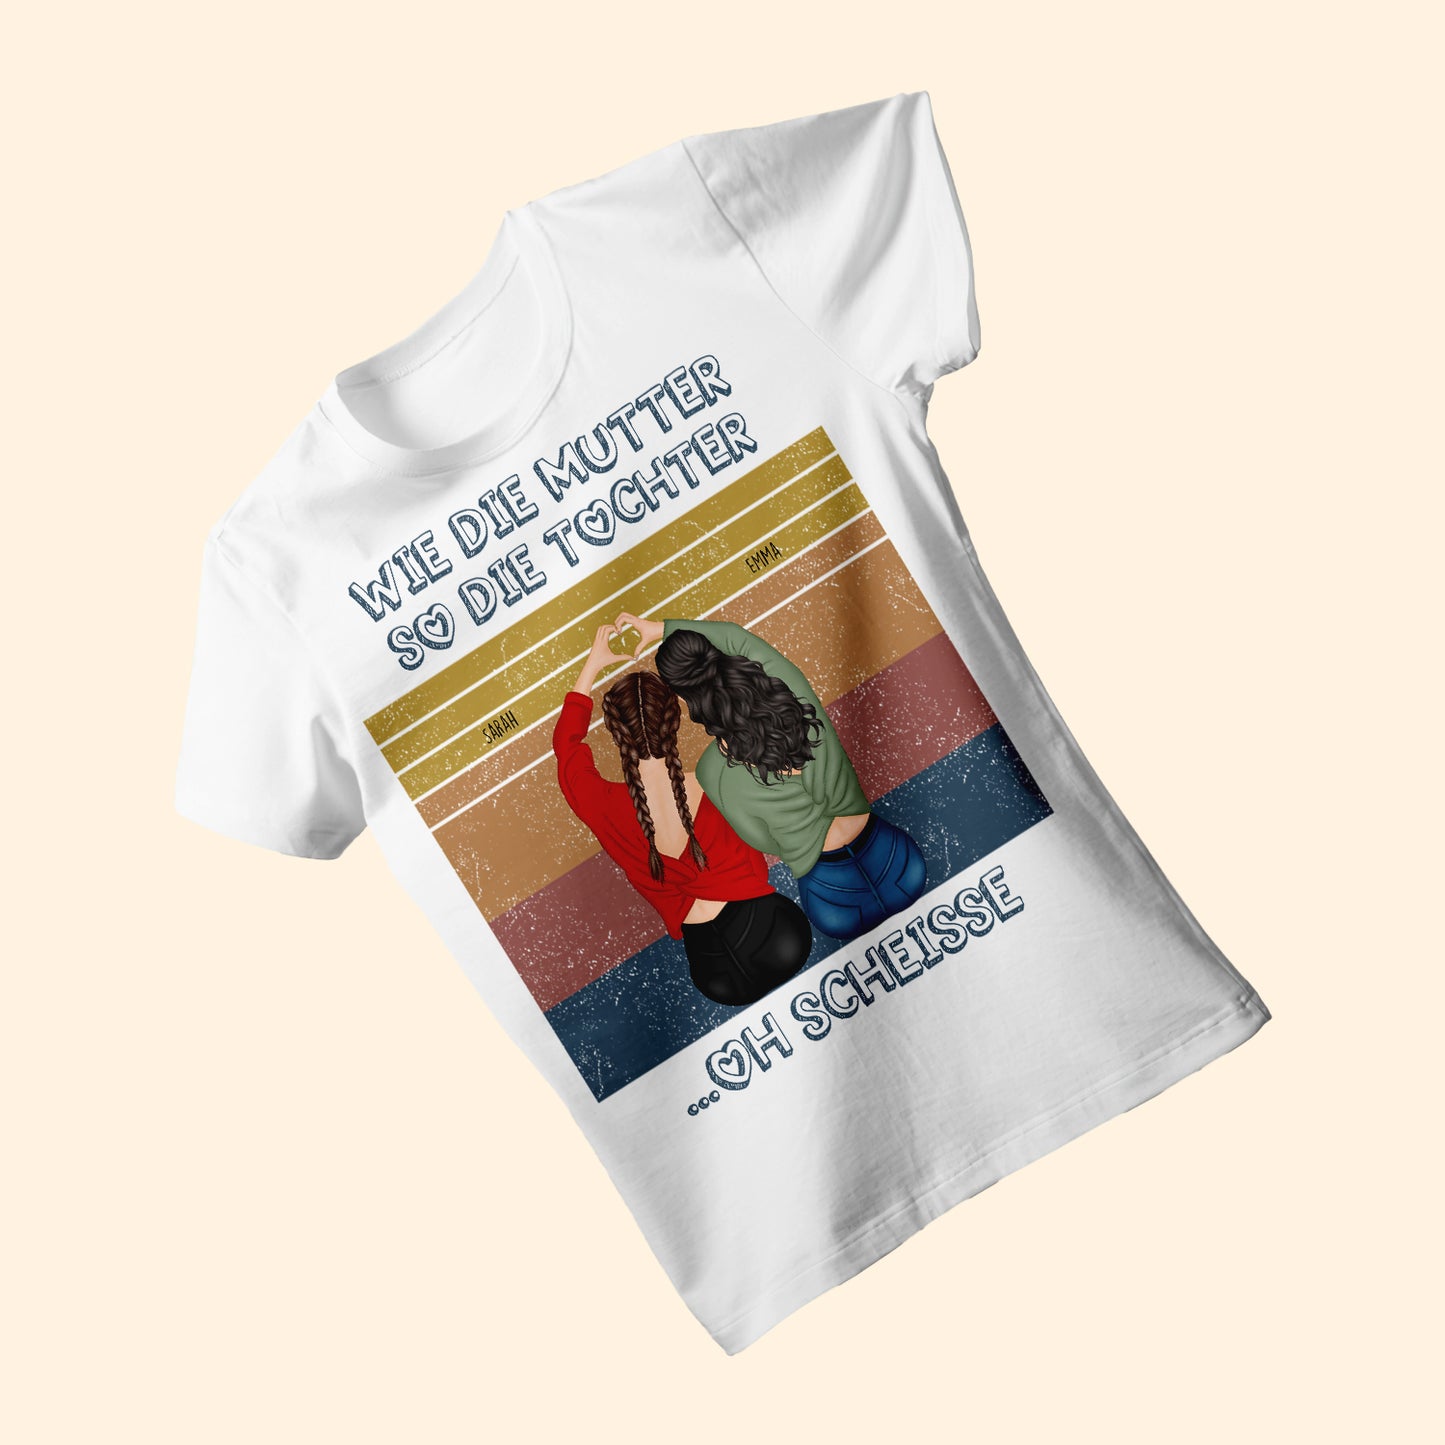 Wie Die Mutter So Die Tochter Oh Scheisse - Personalisierte Geschenke - T-shirt Für Mama - Geschenk Für Mama